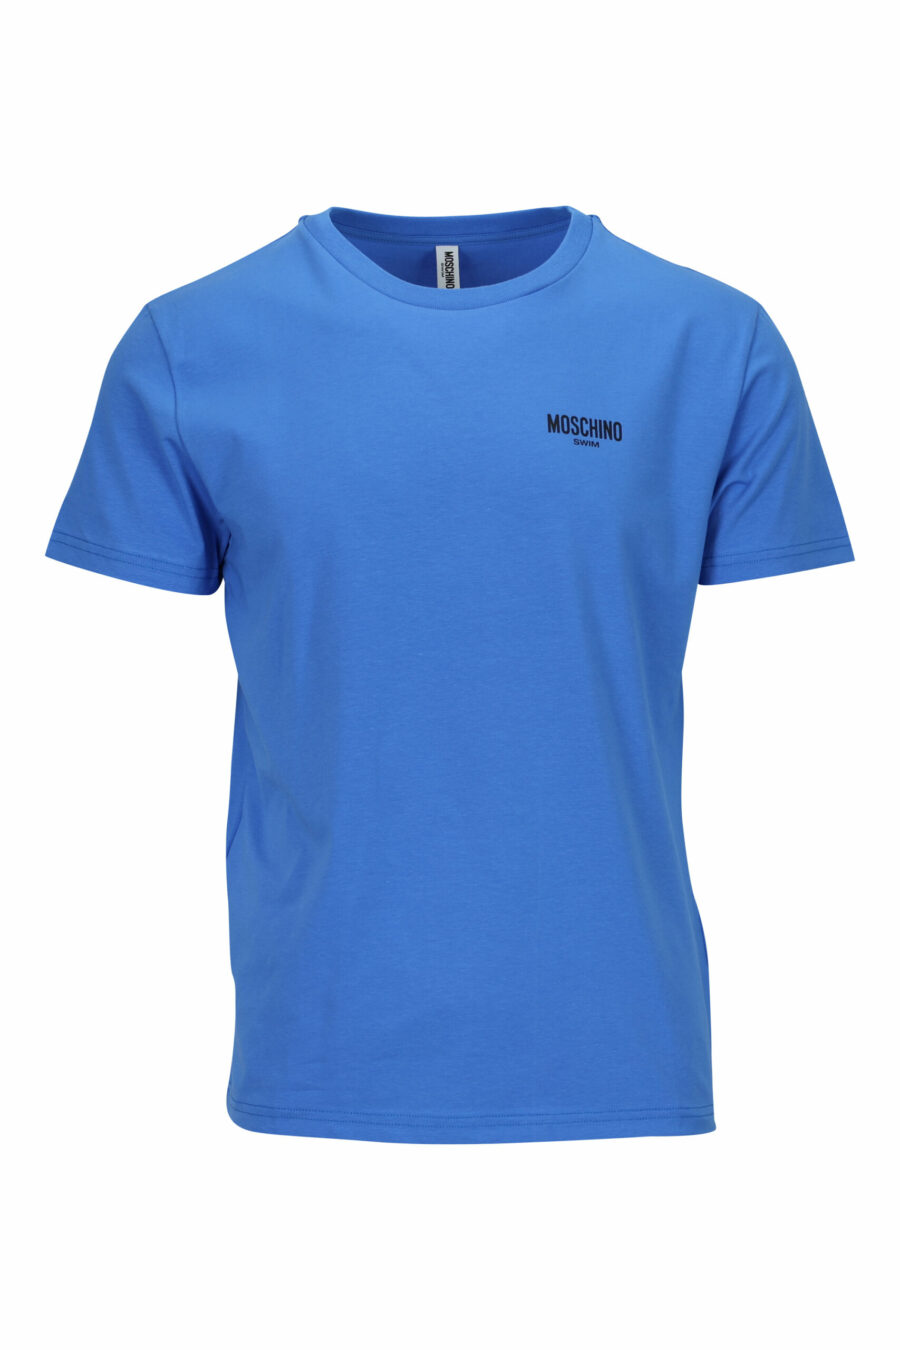 Blaues T-Shirt mit Minilogue "swim" - 667113673417 skaliert